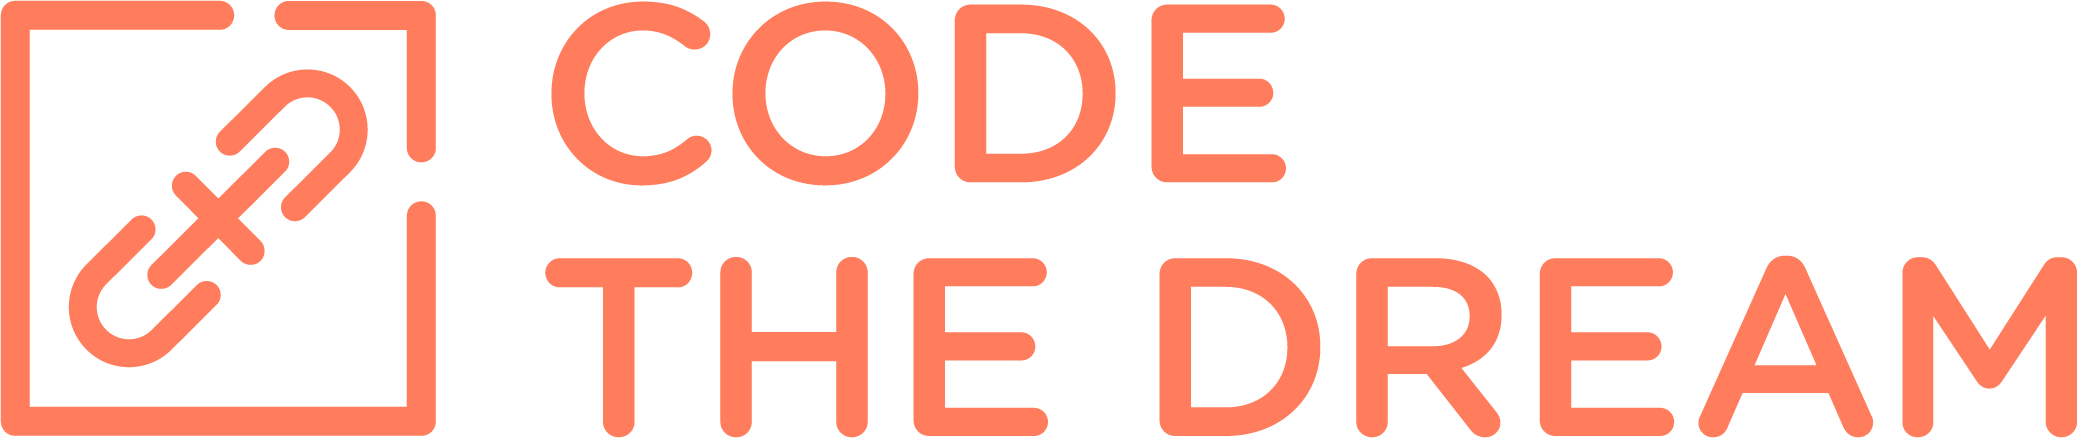 Code the Dream logo